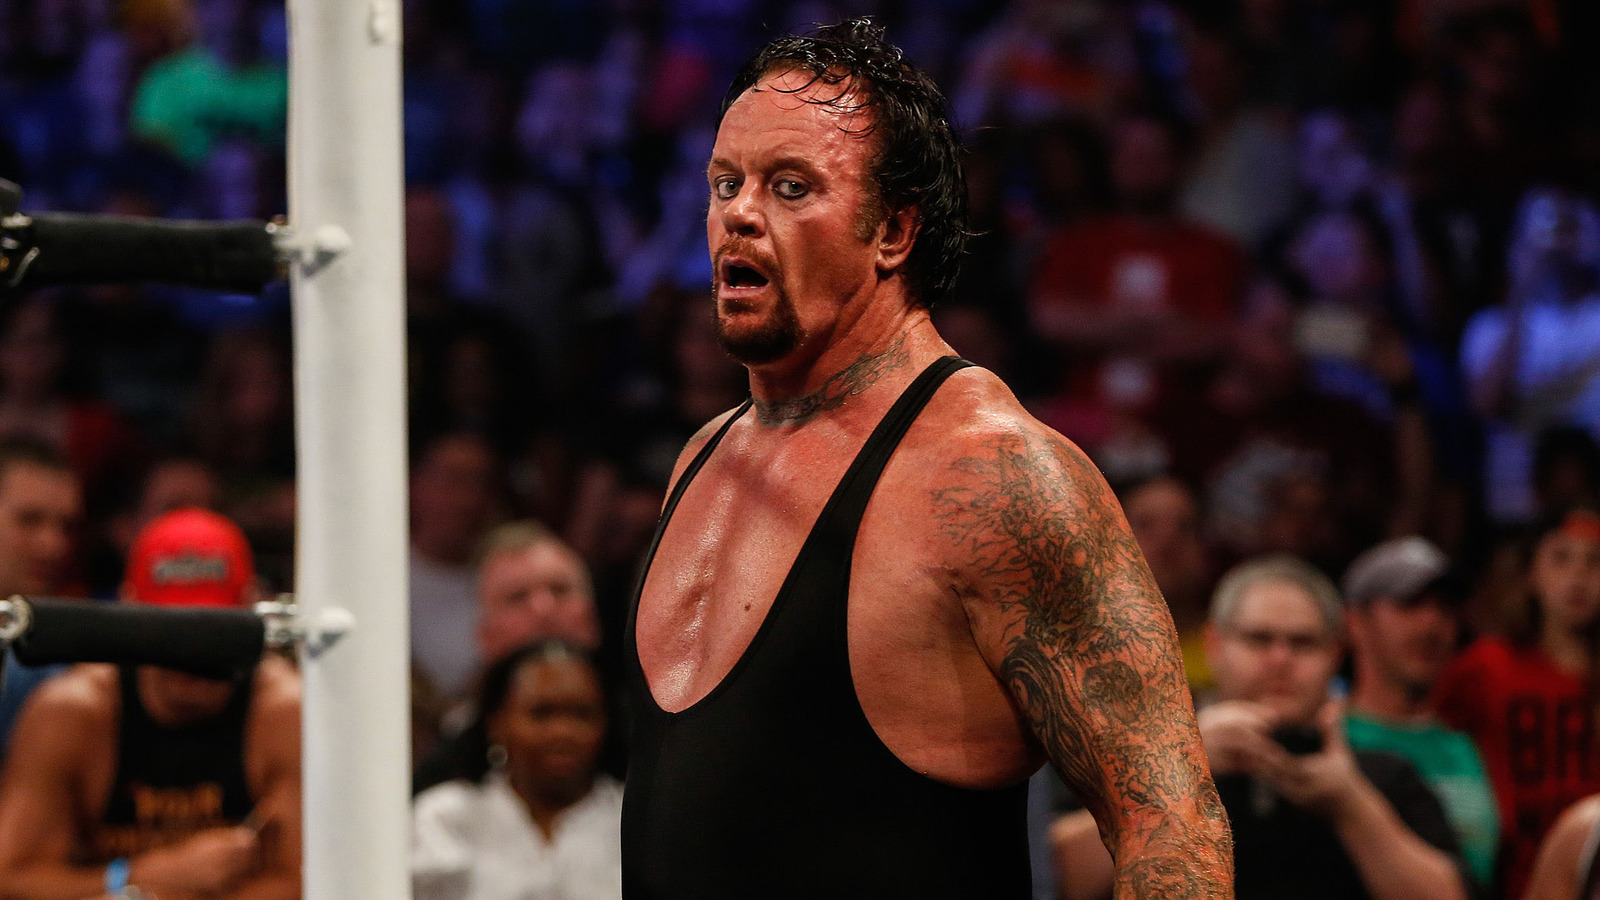 The Undertaker habla sobre cómo su carrera en la WWE podría haber durado más